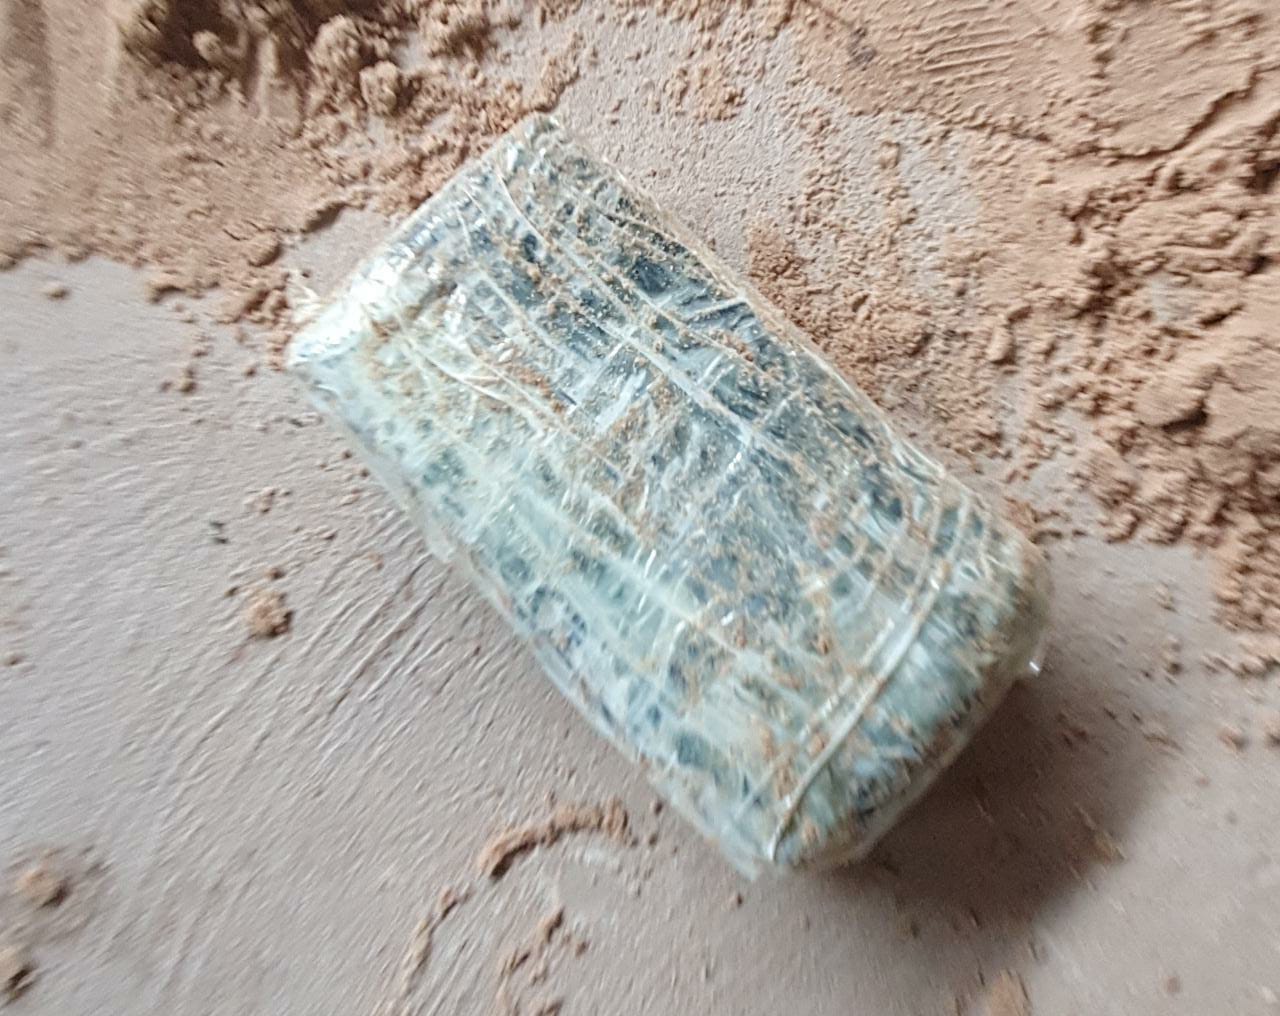 Tablete de crack encontrado pela polícia